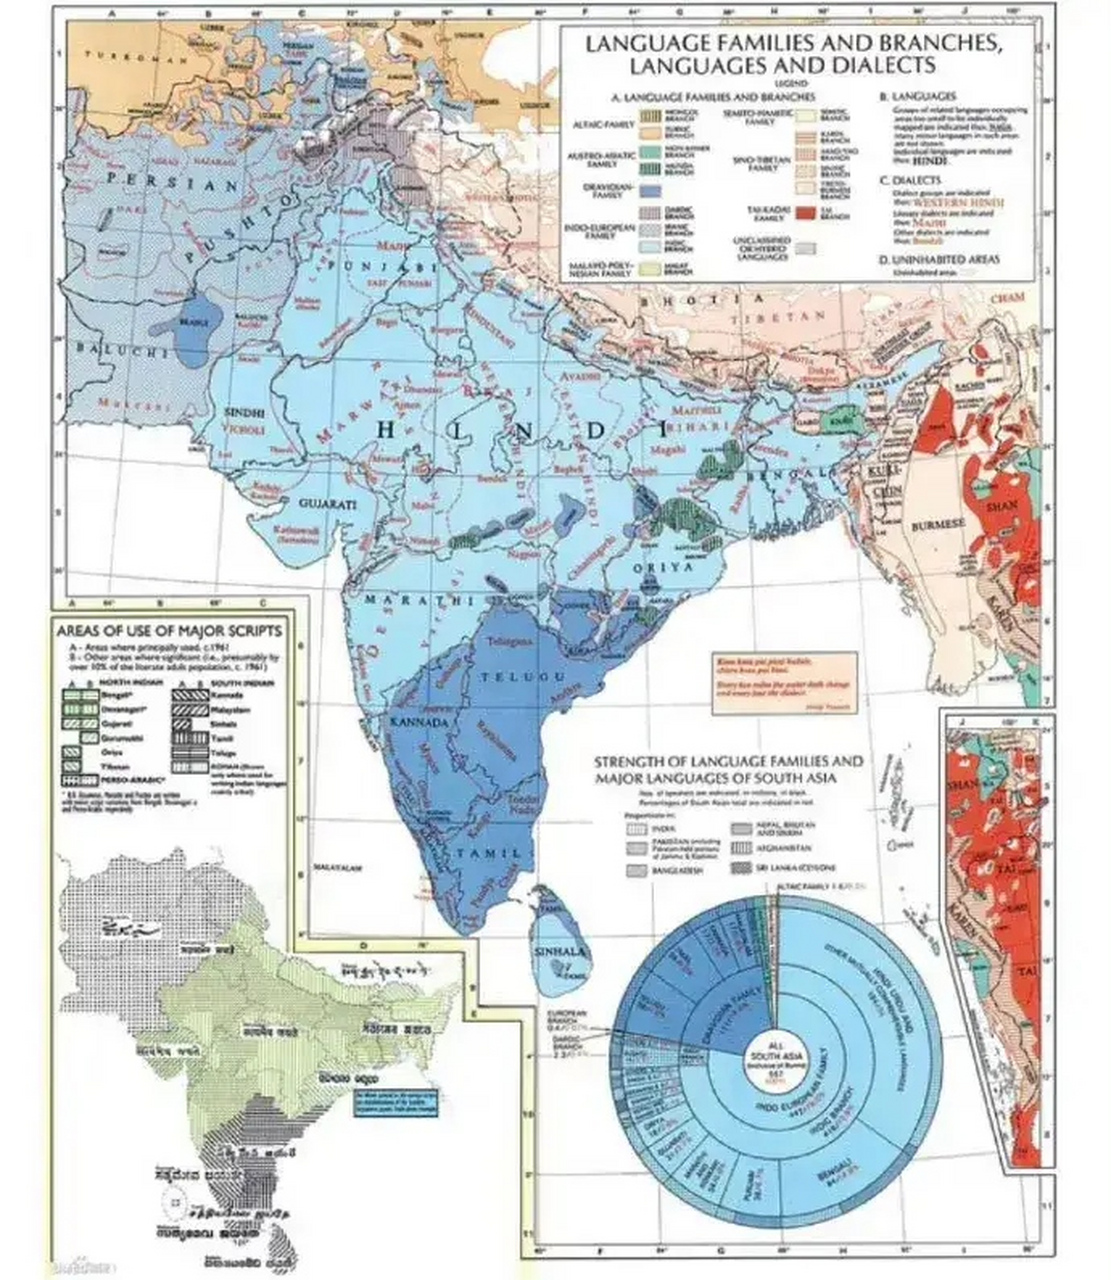 印度语言地图: 据有关资料统计,印度共有1652种语言和方言,其中使用